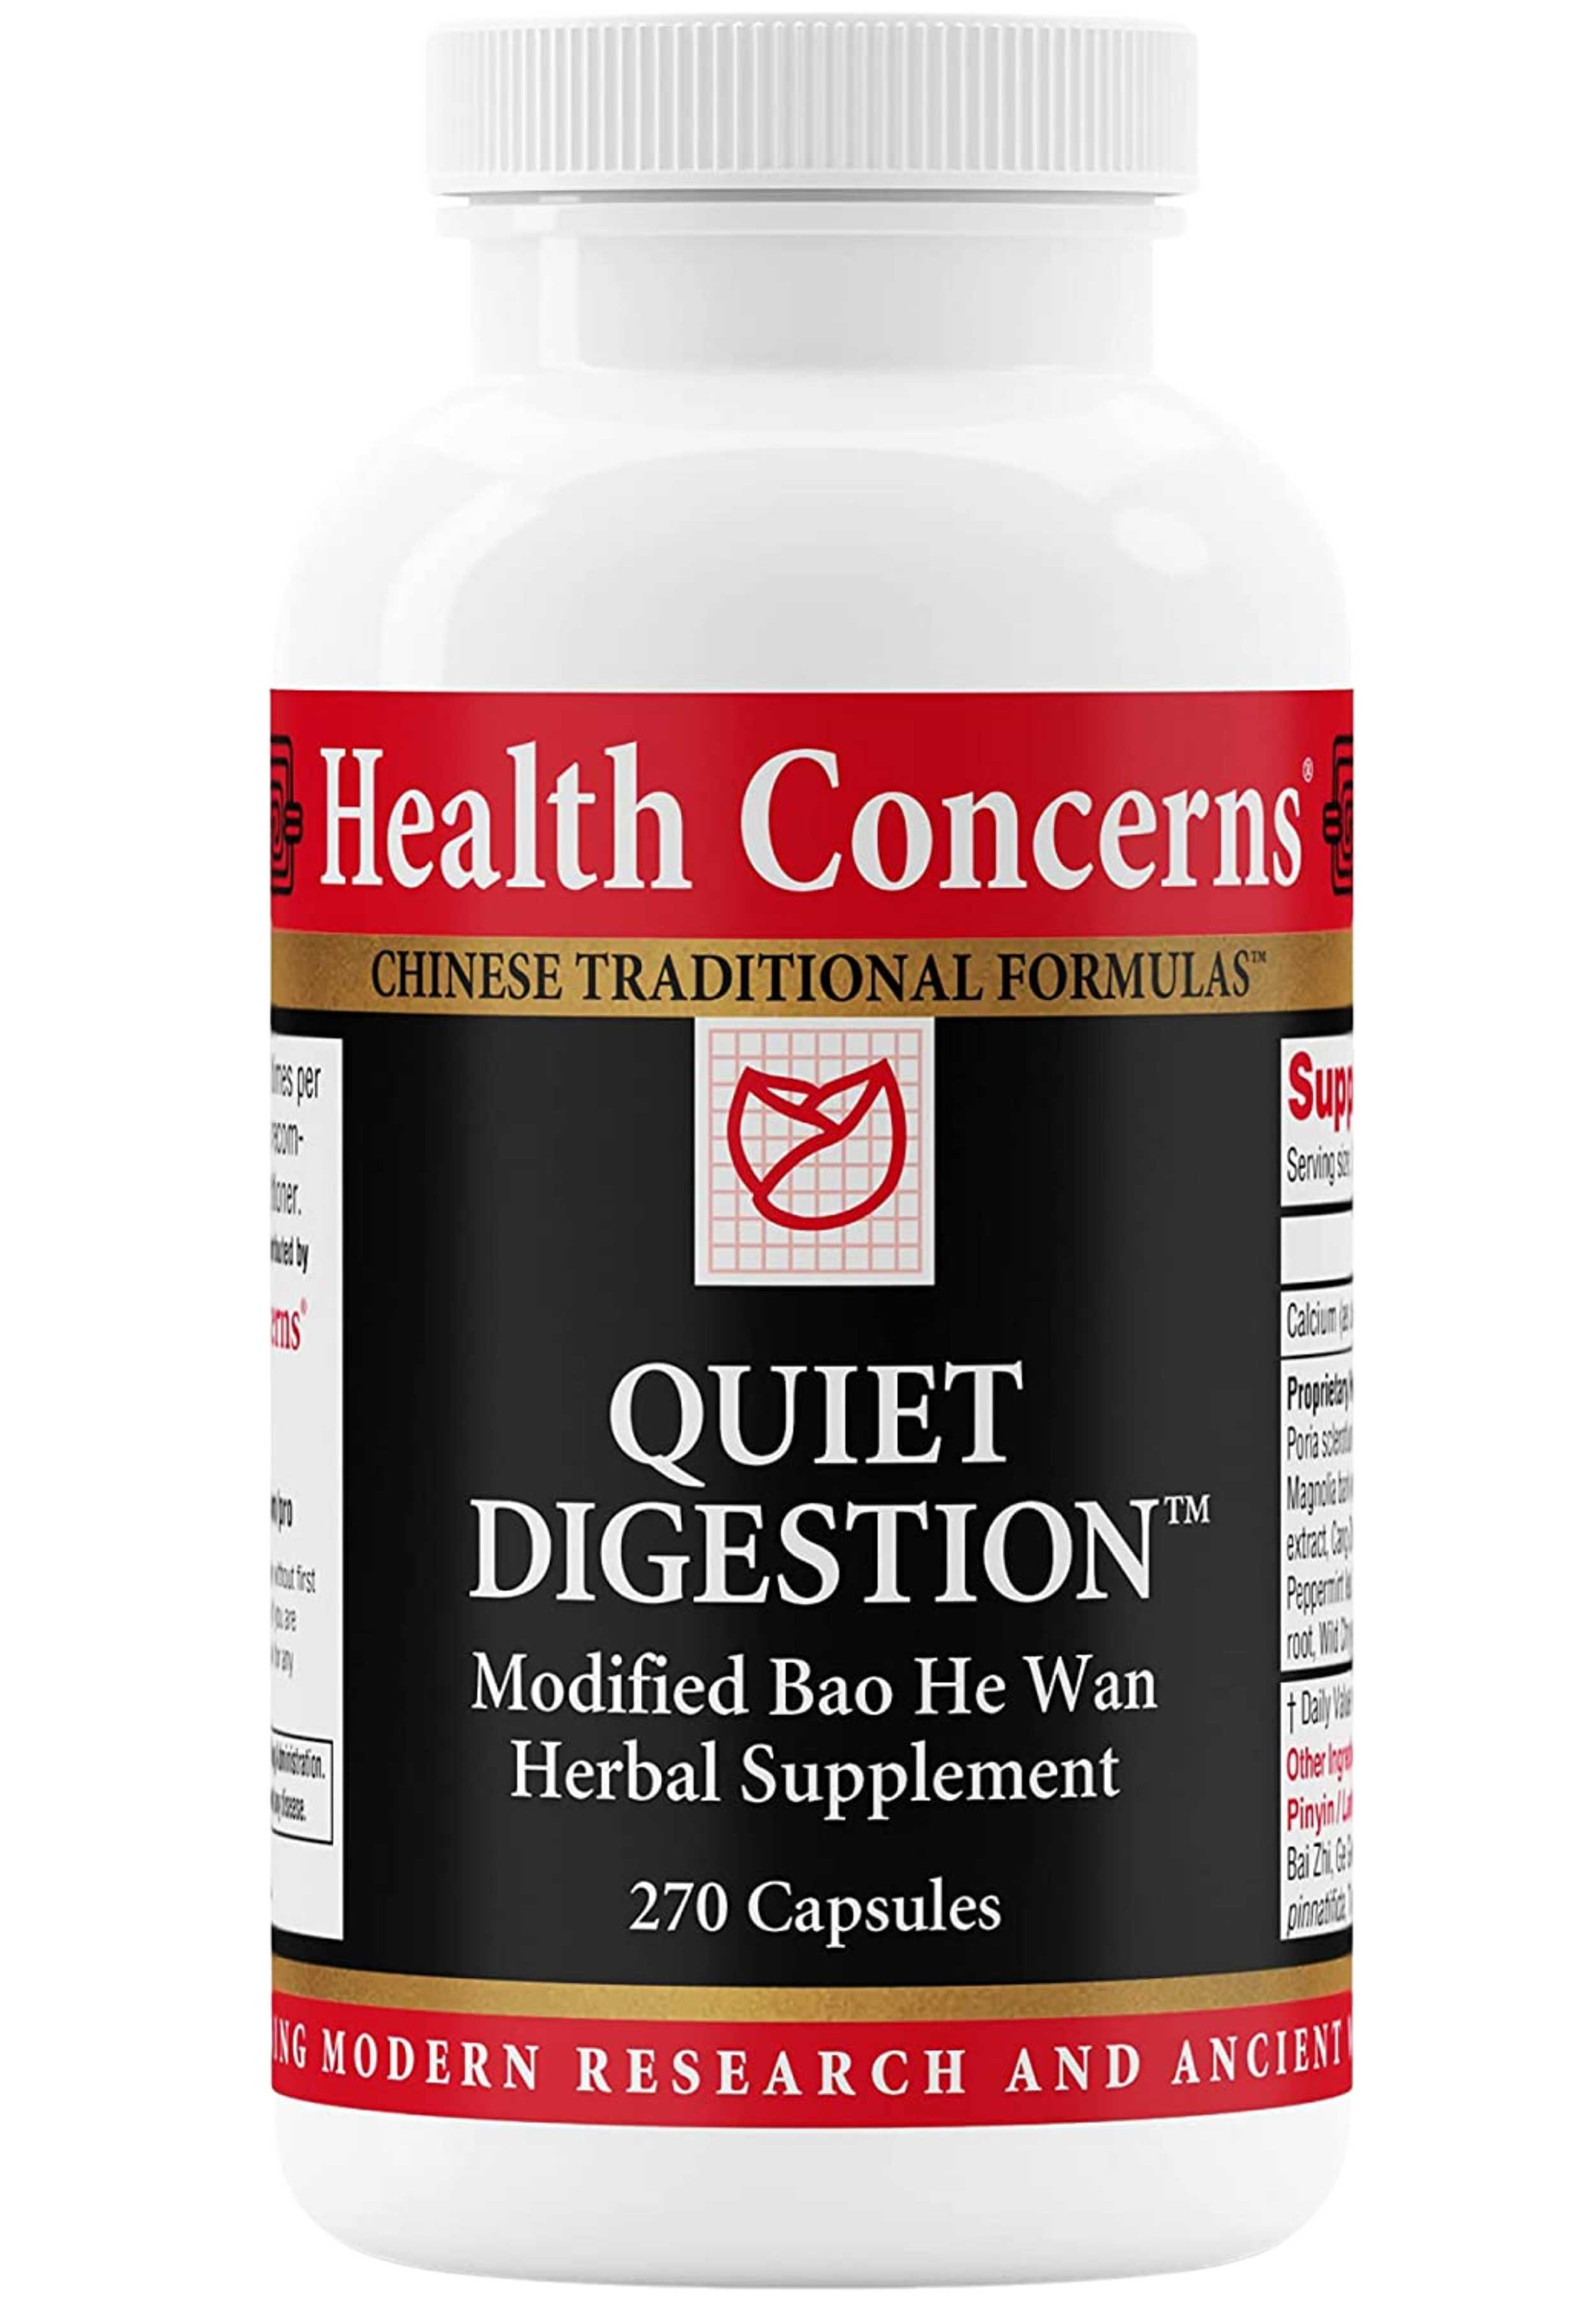 Health Concerns Quiet Digestion